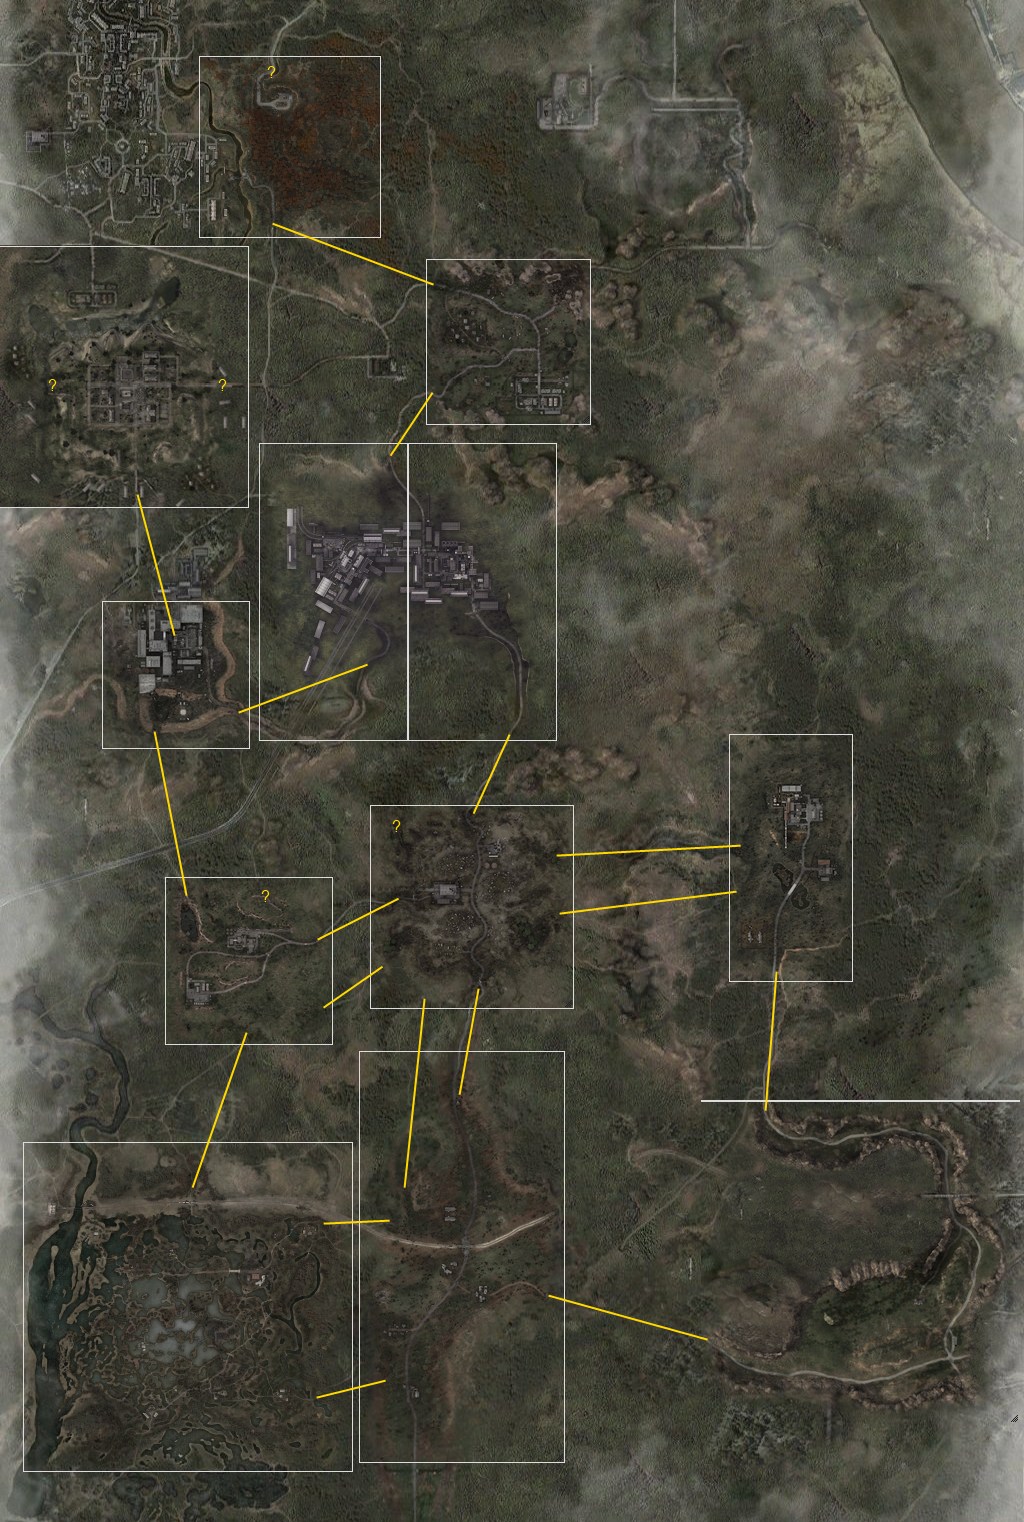 Сталкер интерактивная карта зоны